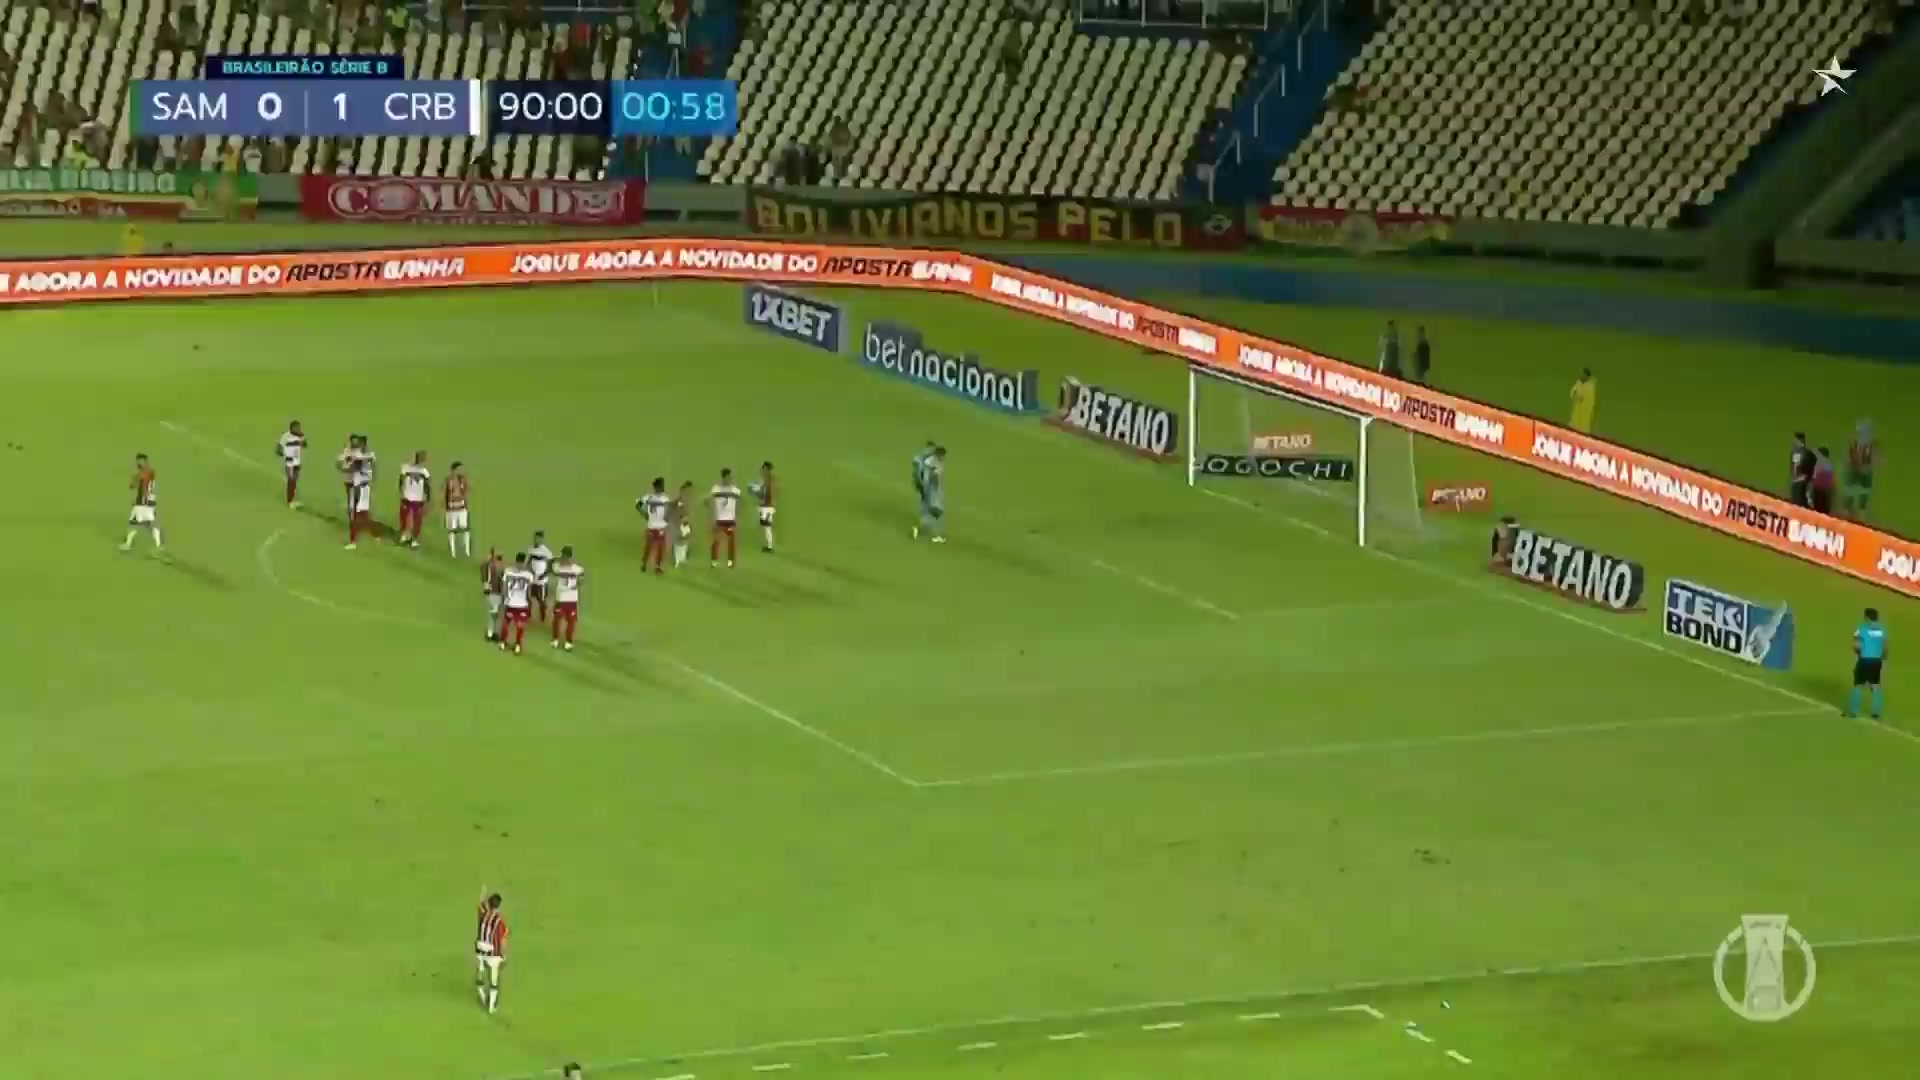 BRA D2 Sampaio Correa Vs CRB AL  Goal in 92 min, Score 1:1